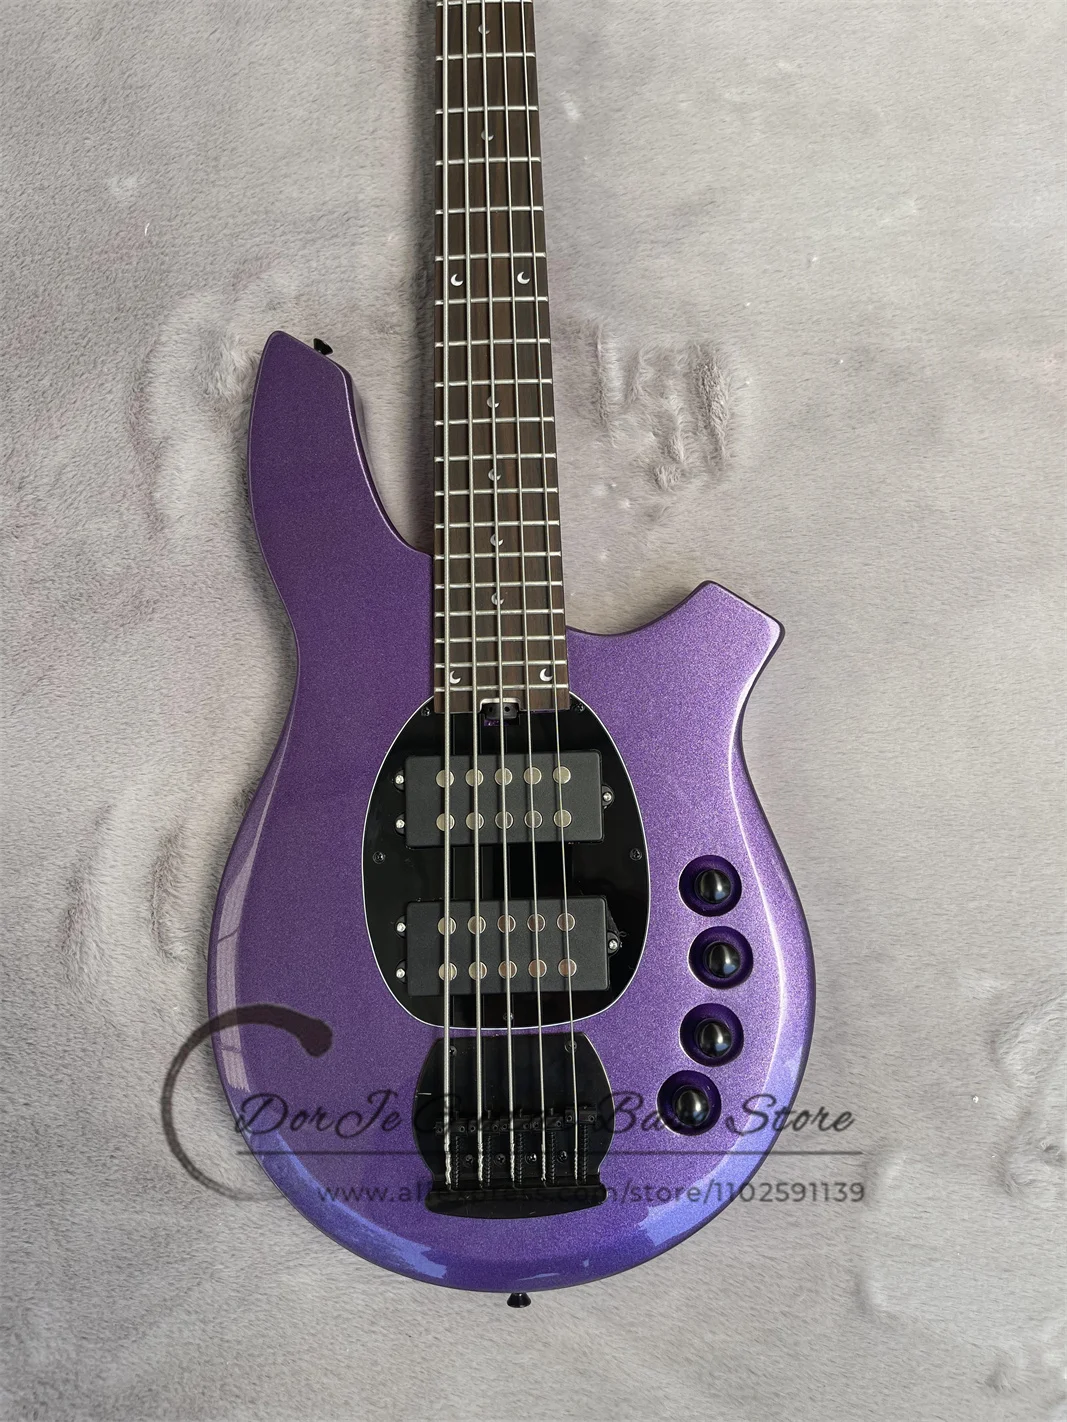 Металлическая фиолетовая бас-гитара Bon Body, накладка из розового дерева, Лунная инкрустация, активная батарея, фиксированный мост, черные тюнеры